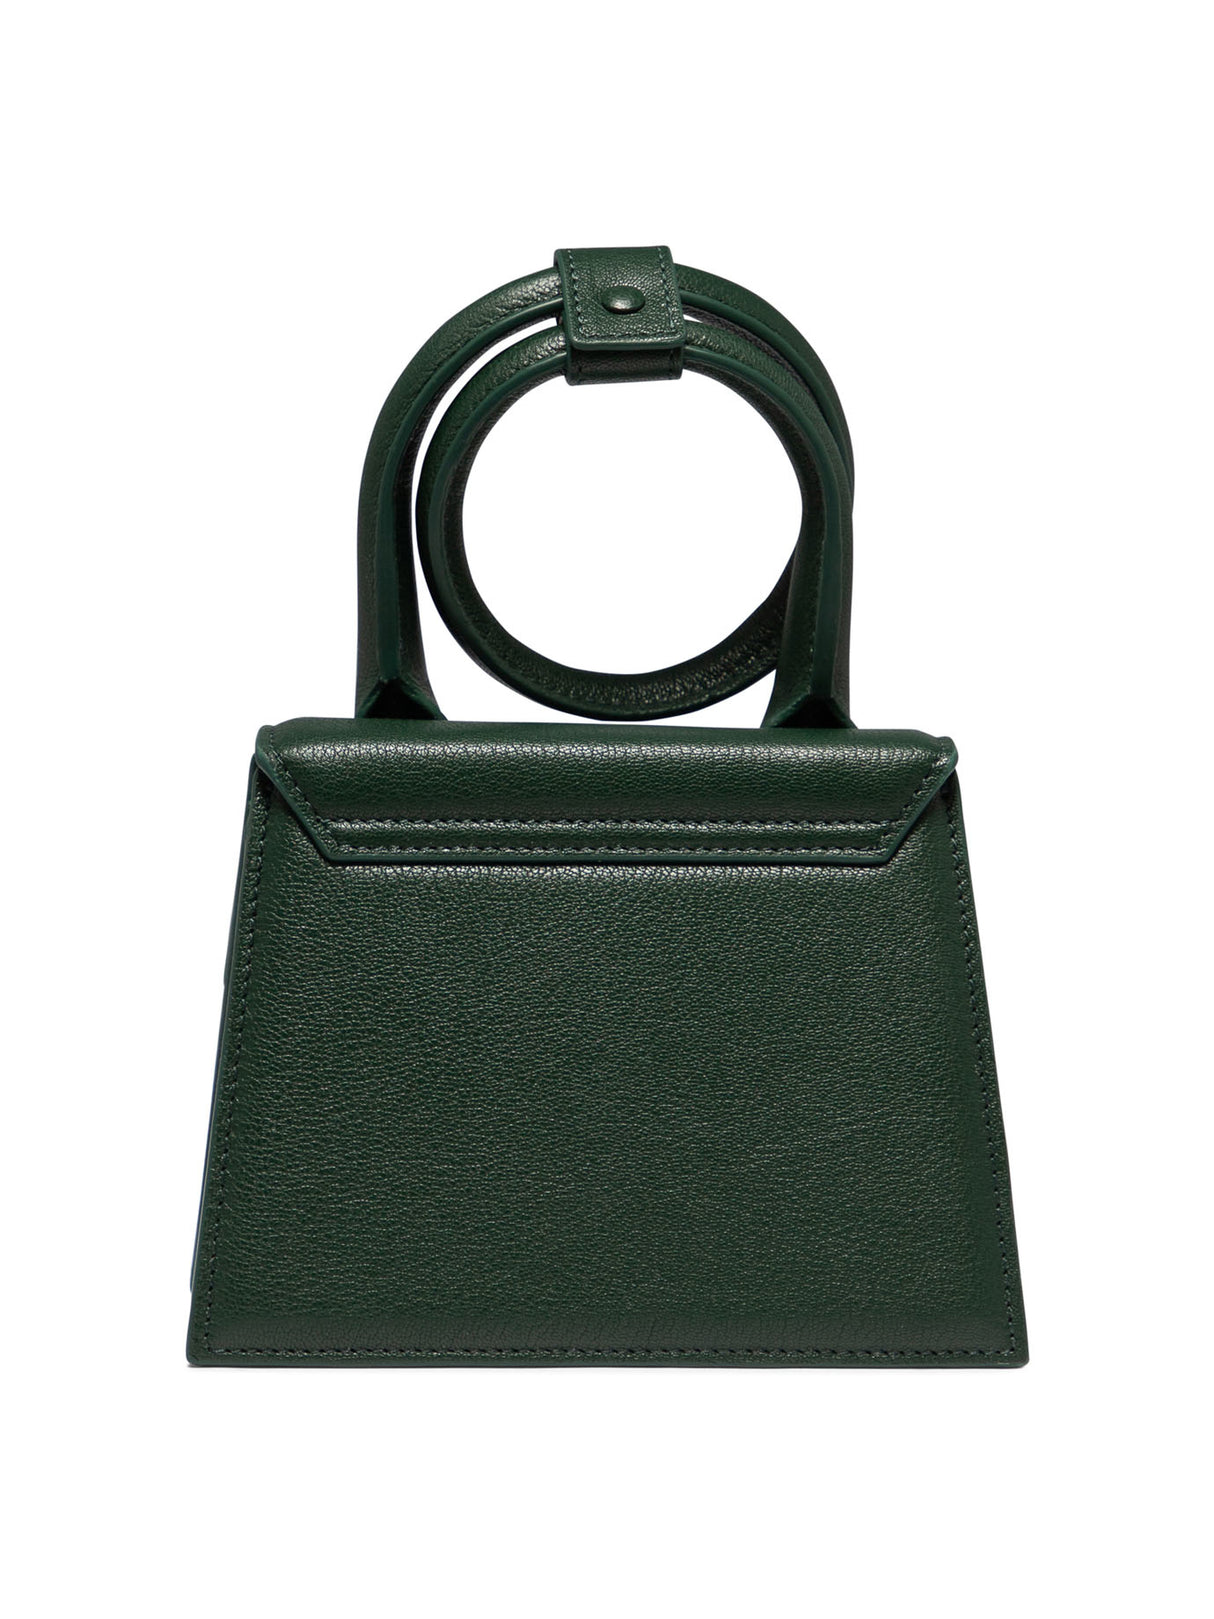 حقيبة يد صغيرة خضراء من الجلد مع تزيينة فيونكة للنساء